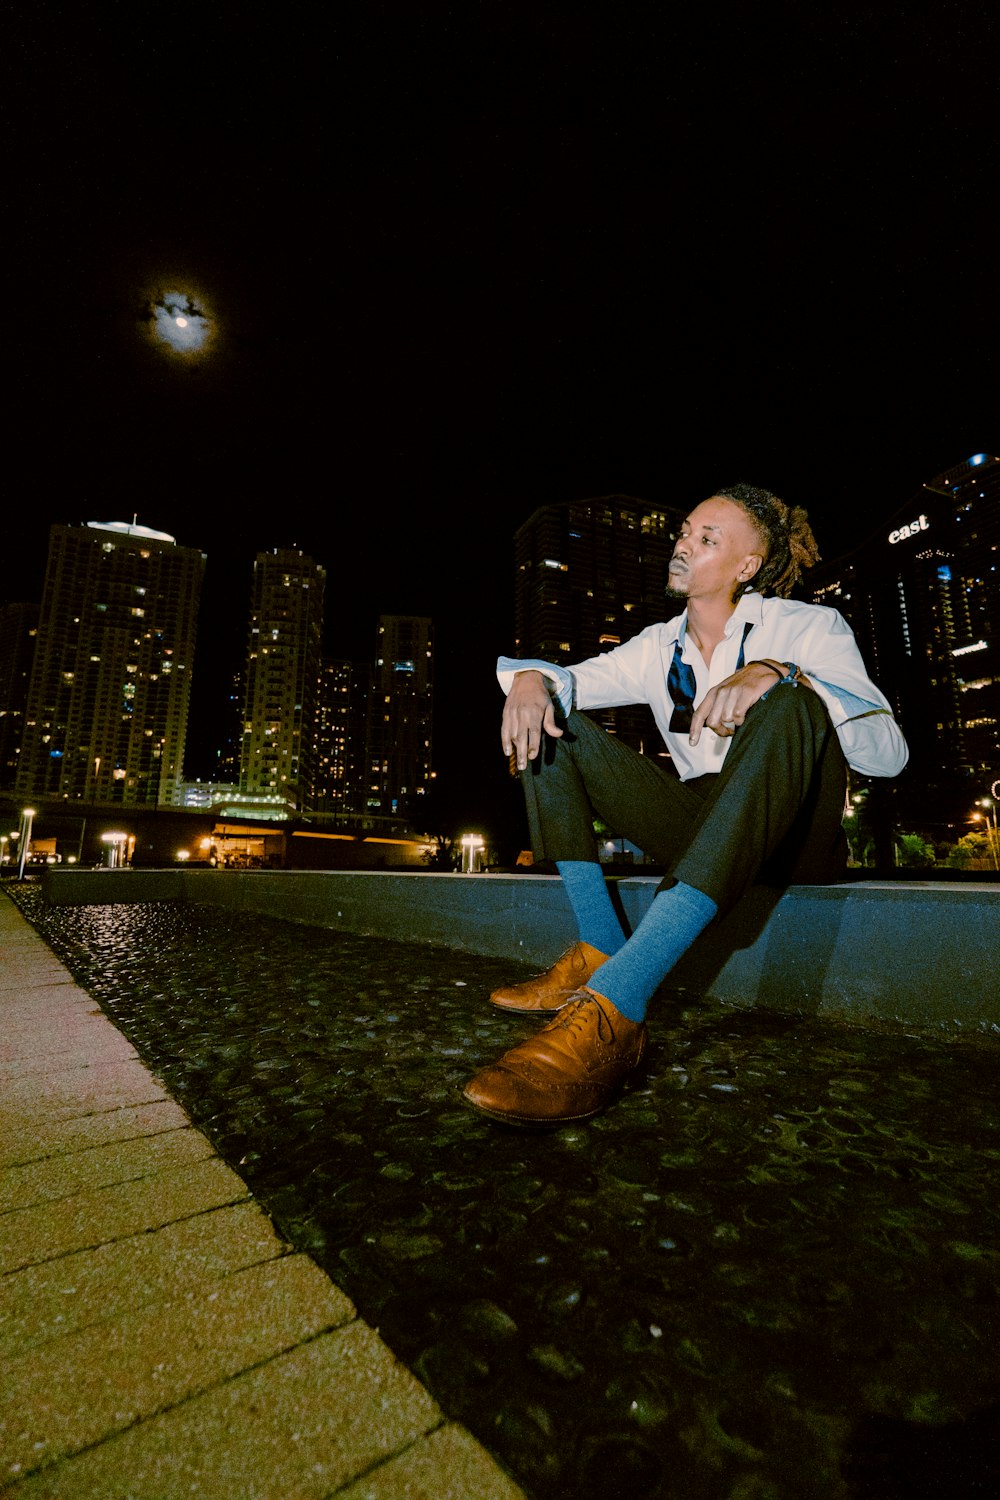 Mann in weißem Hemd und schwarzer Hose sitzt nachts auf grauem Betonpflaster